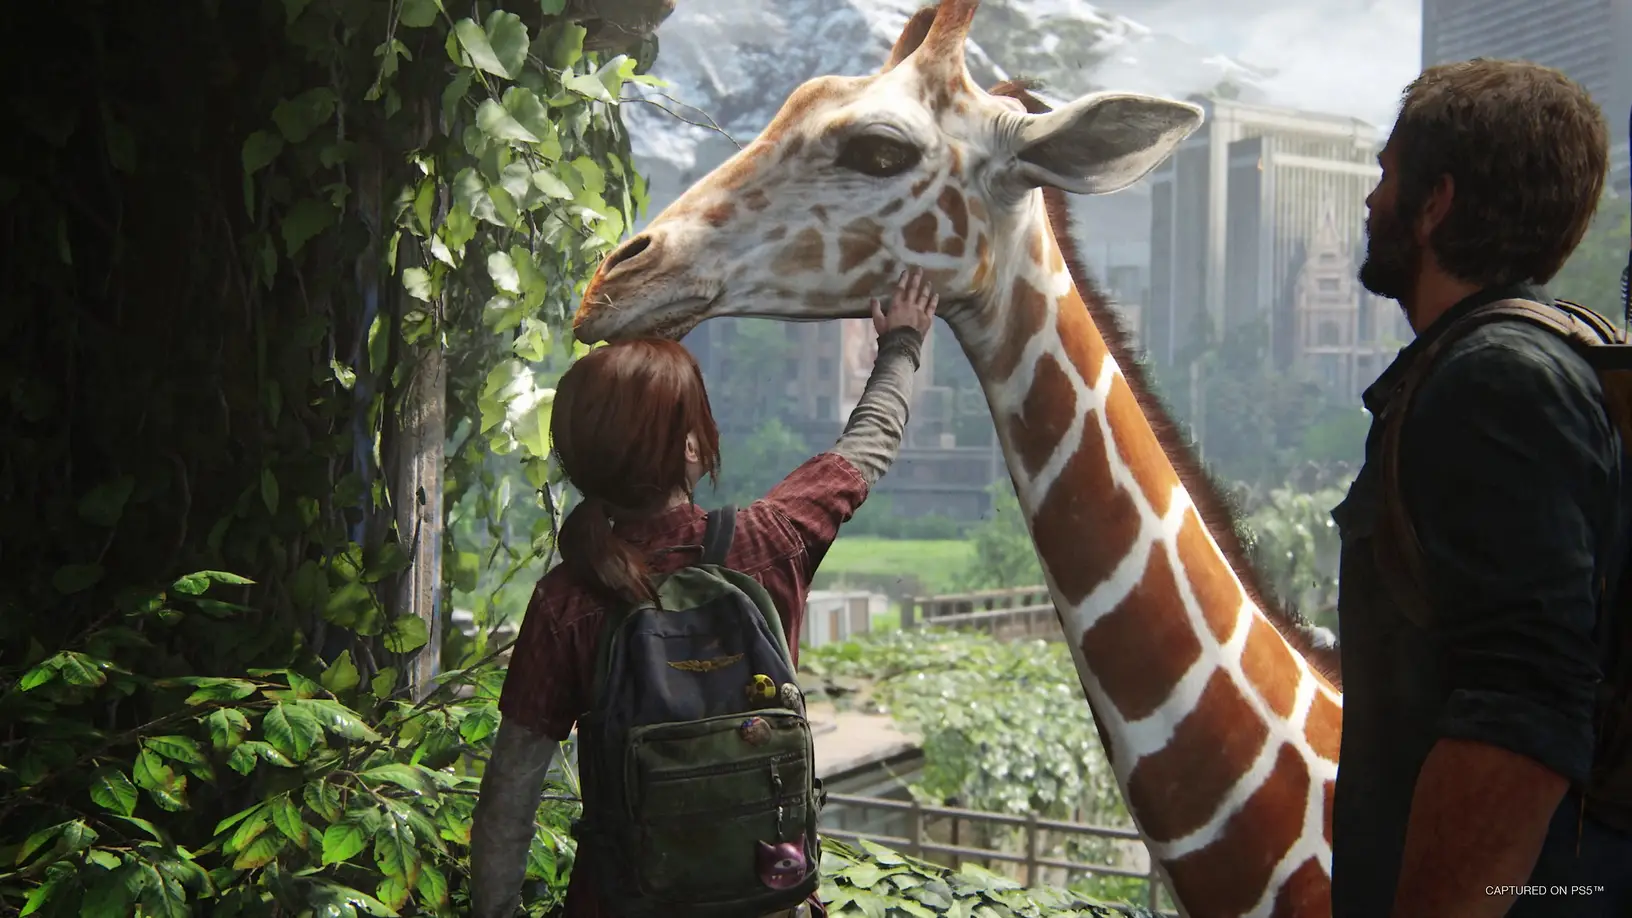 Jogo The Last of Us PS4 Naughty Dog em Promoção é no Buscapé